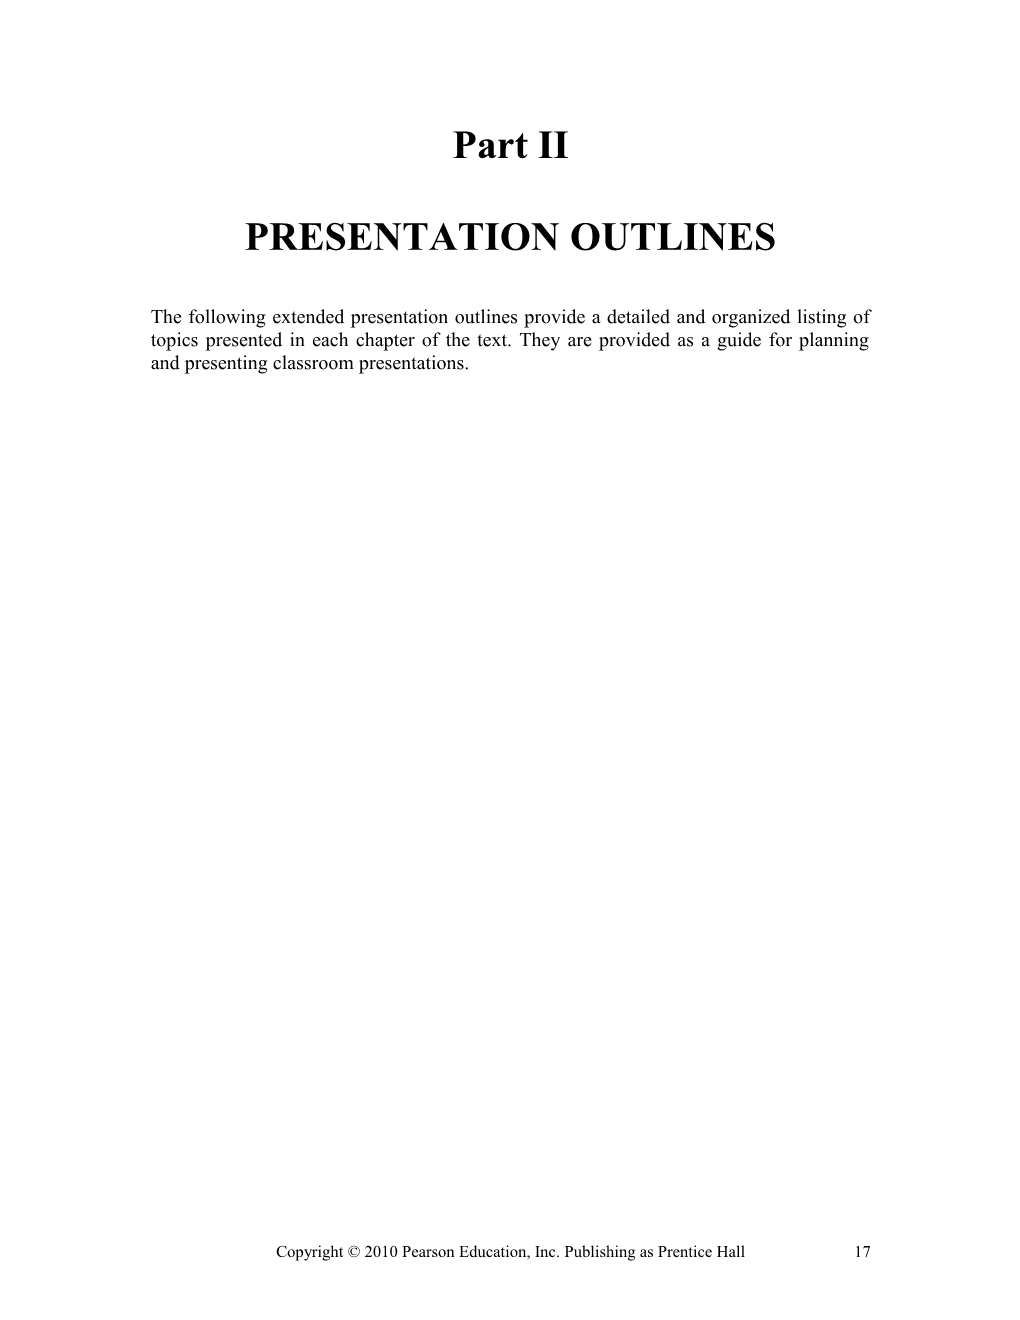 Presentation Outlines